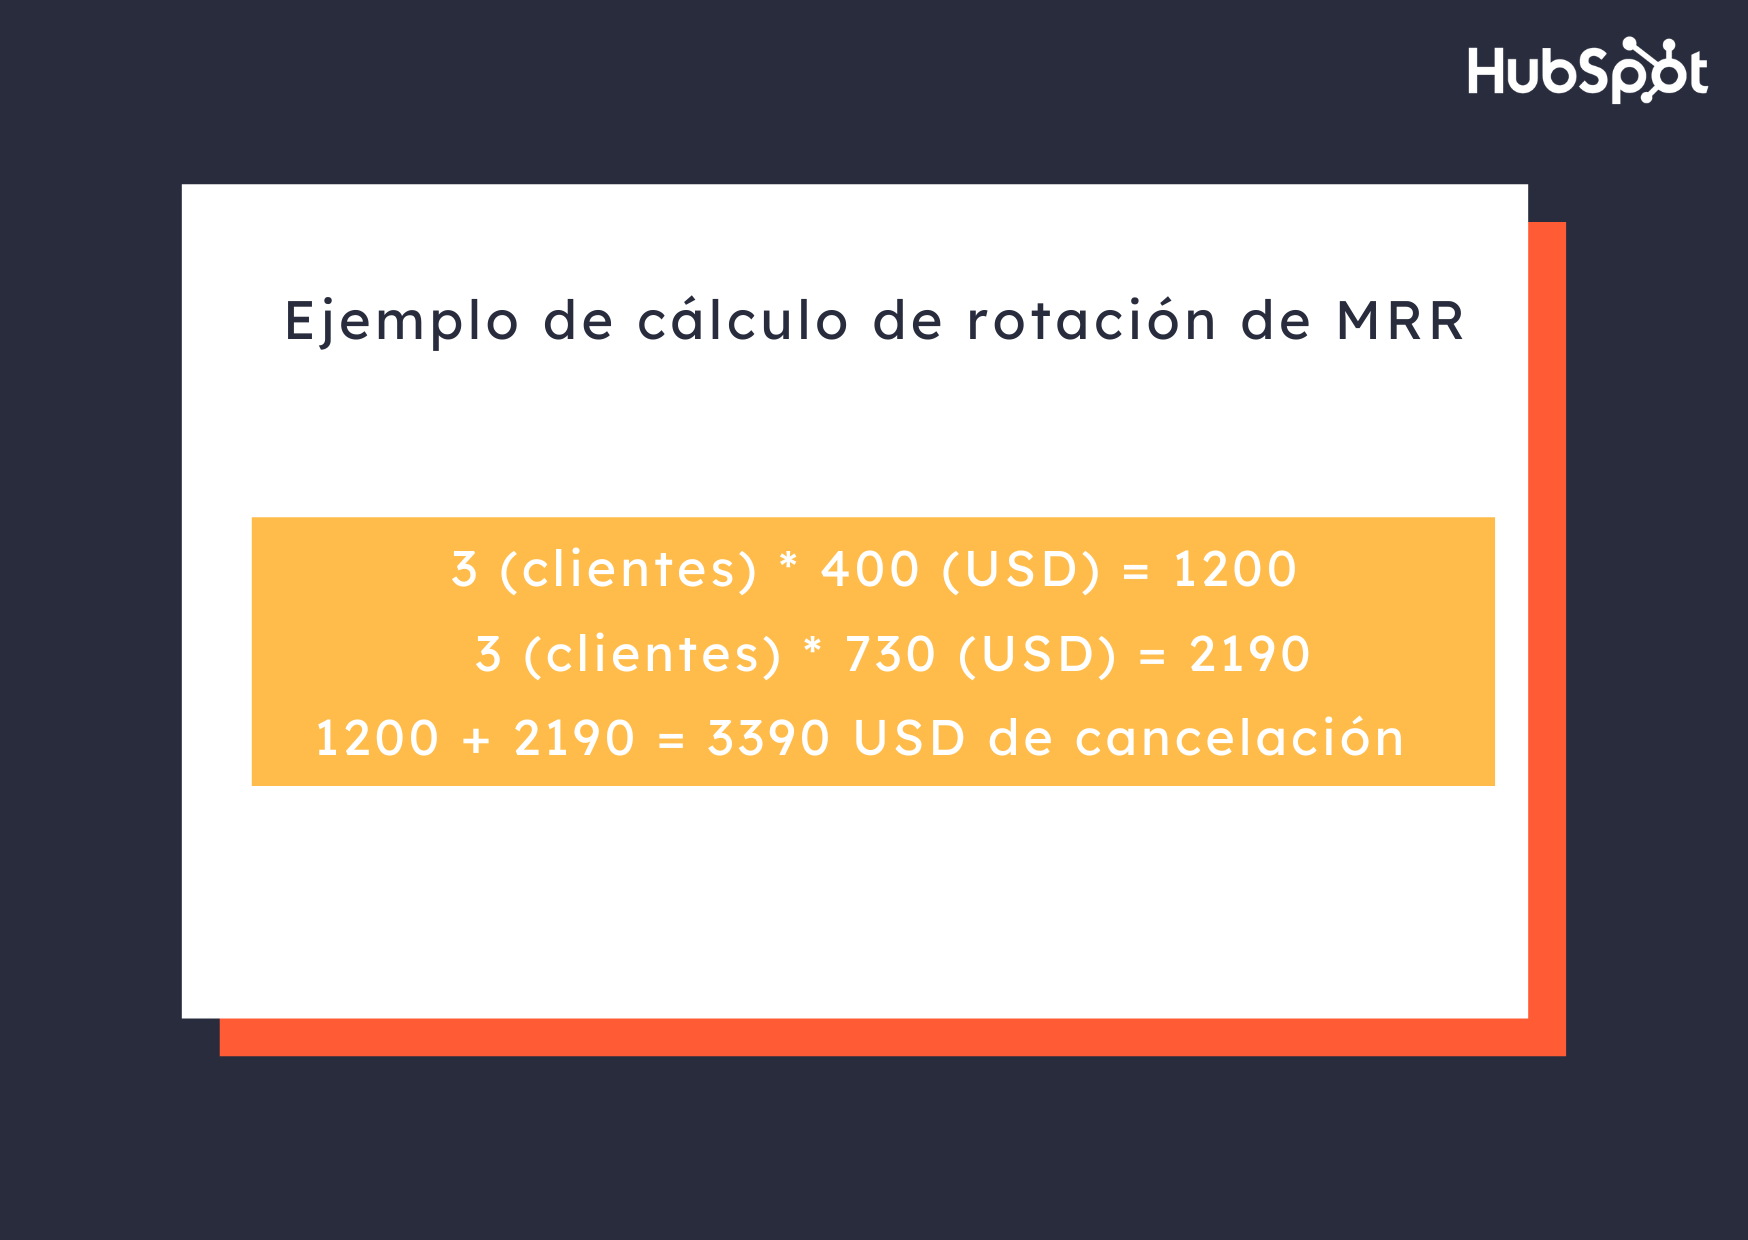 Ejemplo de cálculo de MRR de rotación